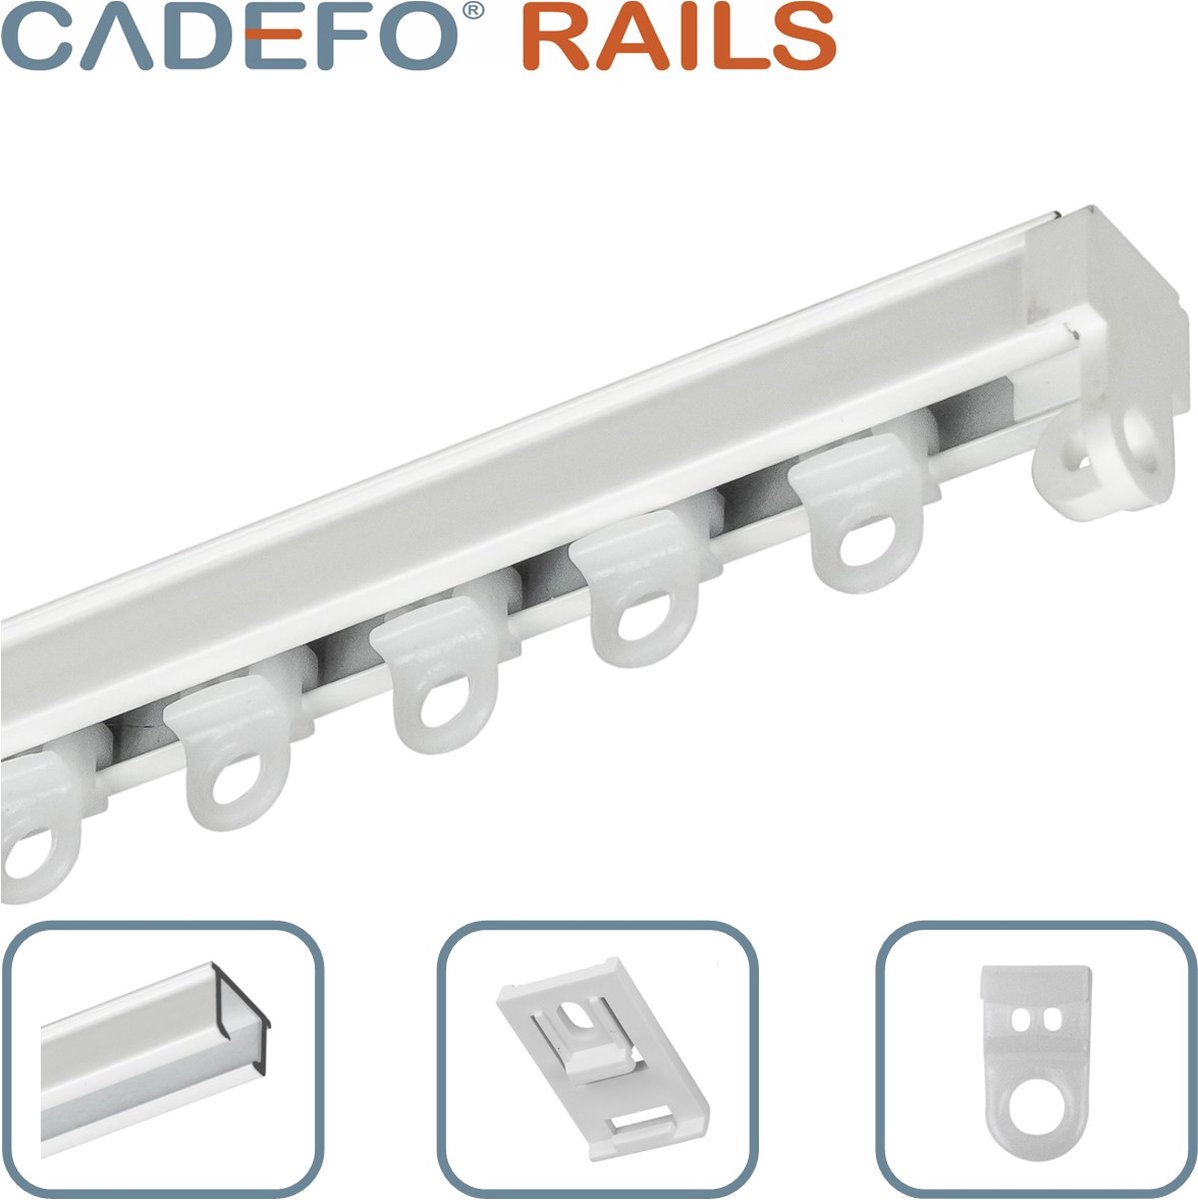 CADEFO RAILS (351 - 400 cm) Gordijnrails - Compleet op maat! - UIT 1 STUK - Leverbaar tot 6 meter - Plafondbevestiging - Lengte 385 cm